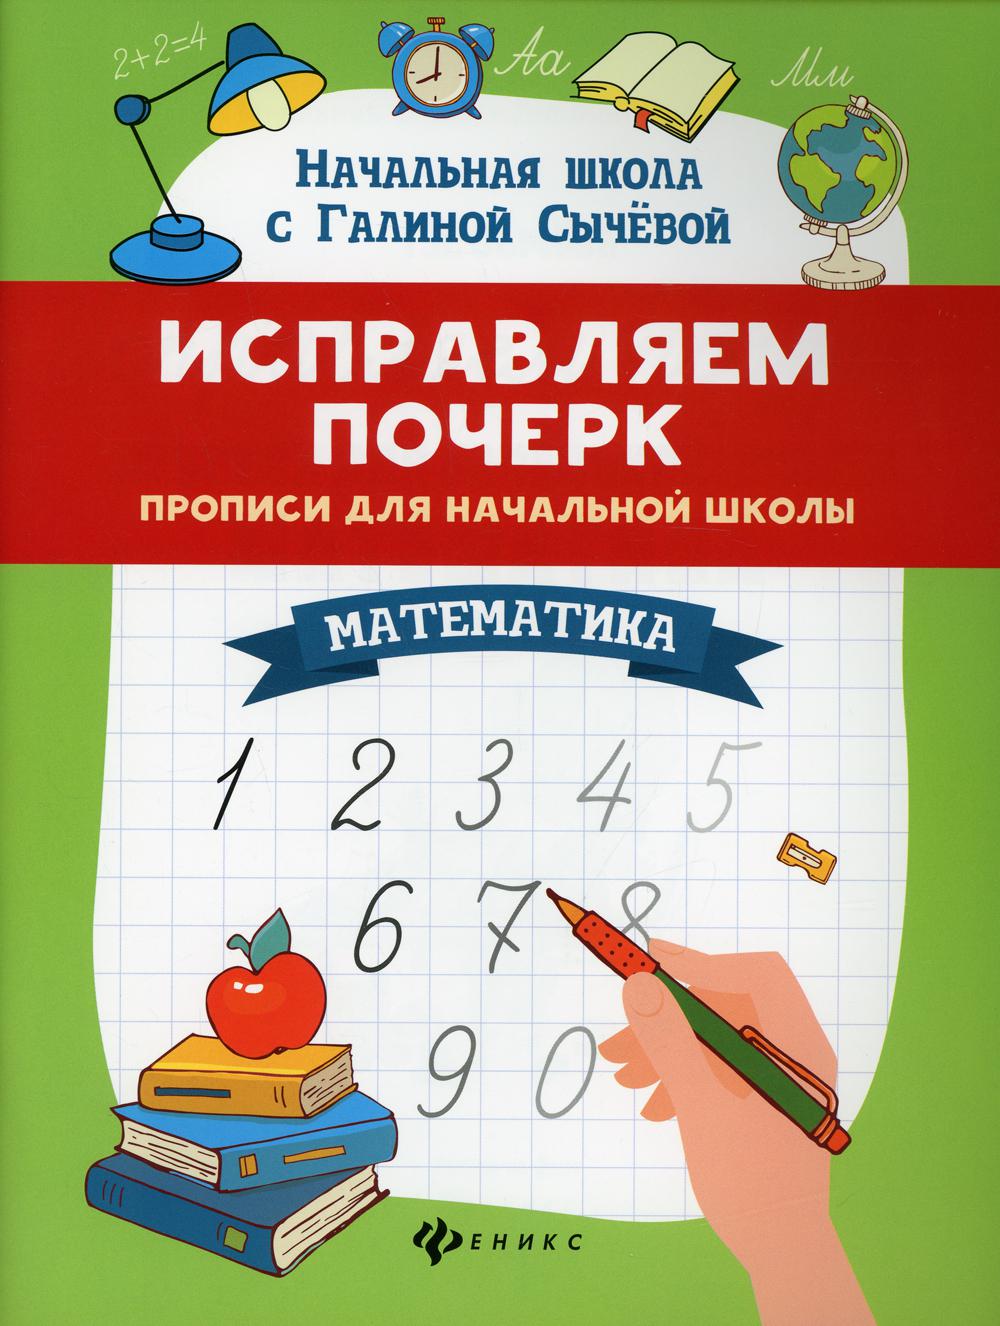 Исправляем почерк: прописи для начальной школы: математика. 8-е изд